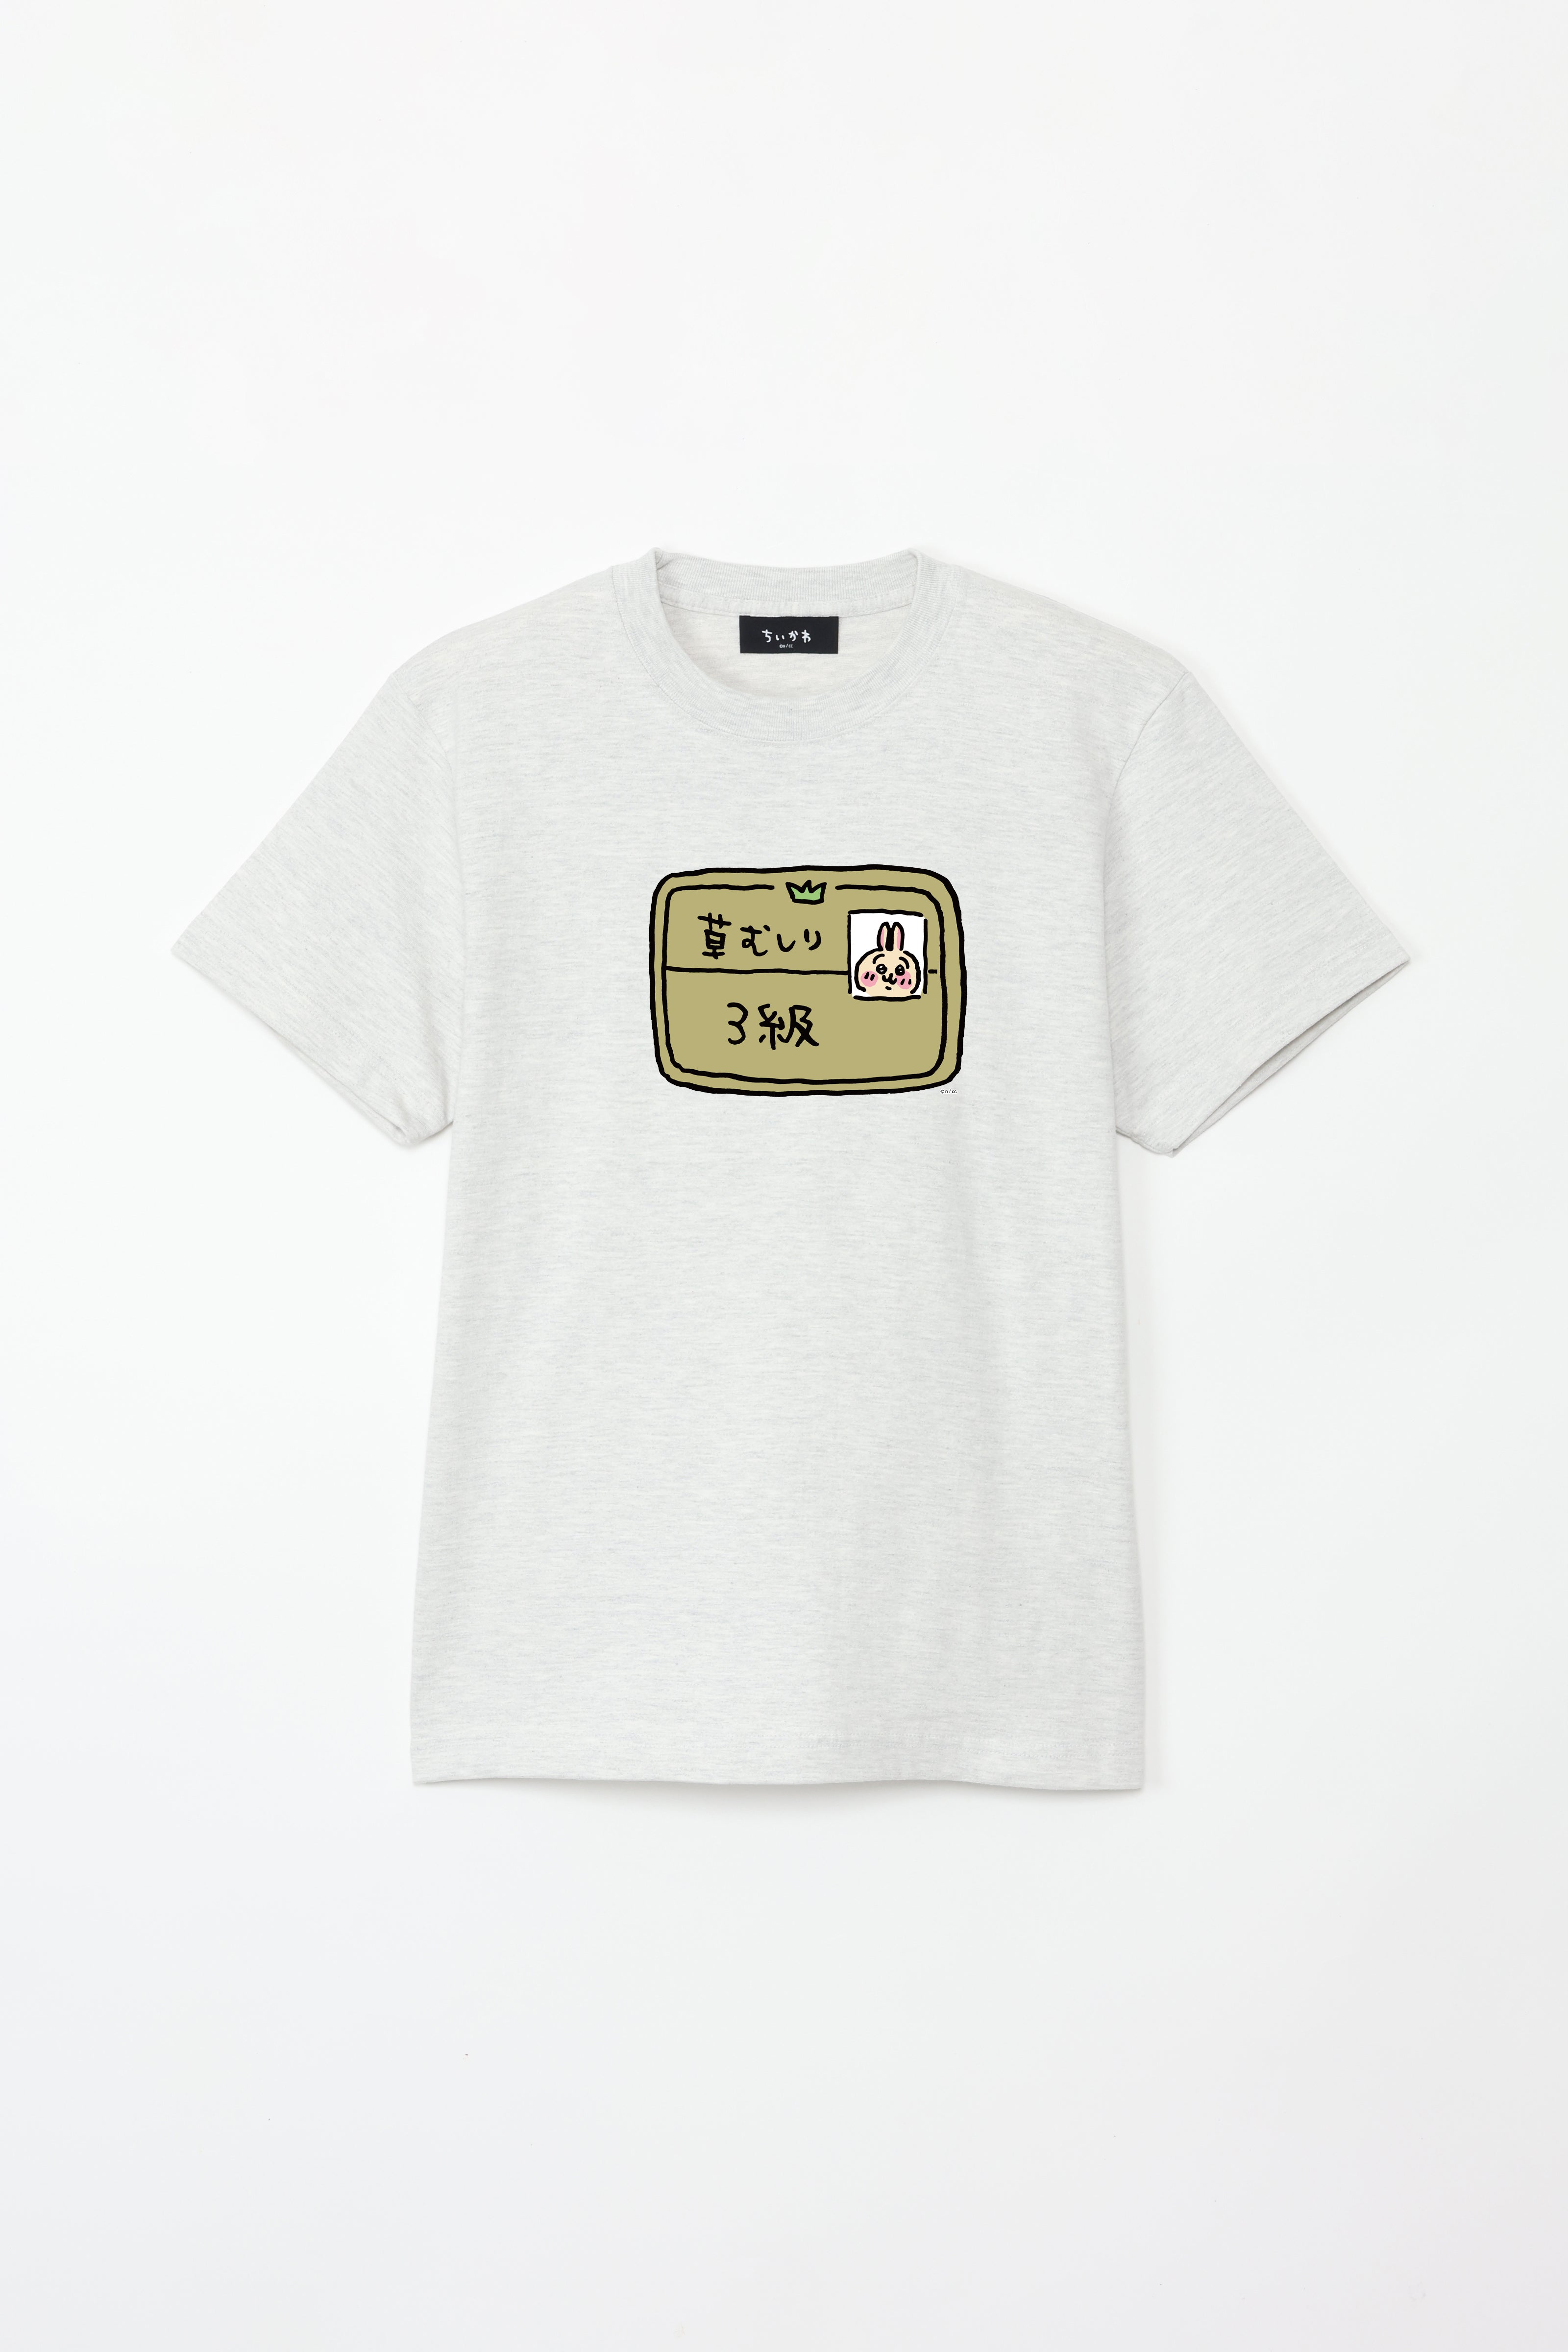 ちいかわ 3級 Tシャツ – Talking Heads ODM